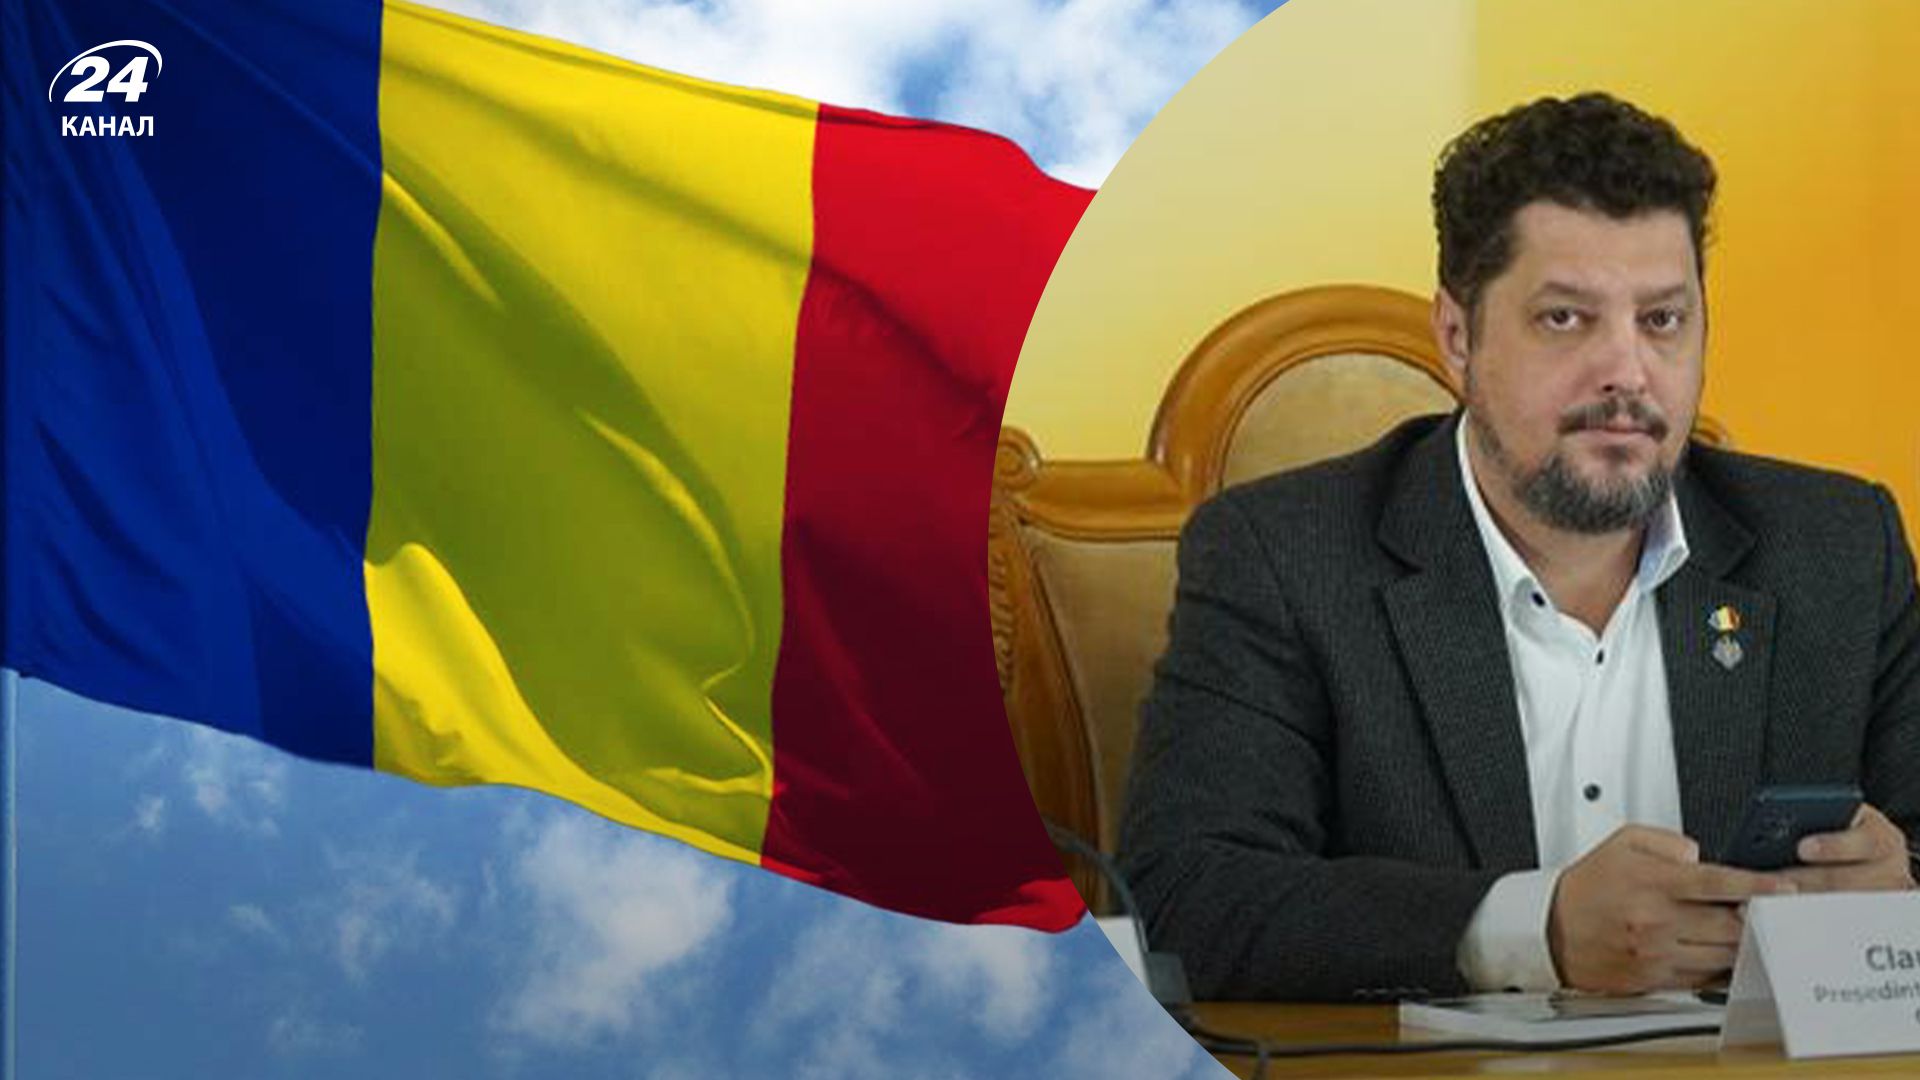 Лідер партії "Альянс за союз Румунії" заявив, що хоче анексувати деякі території України